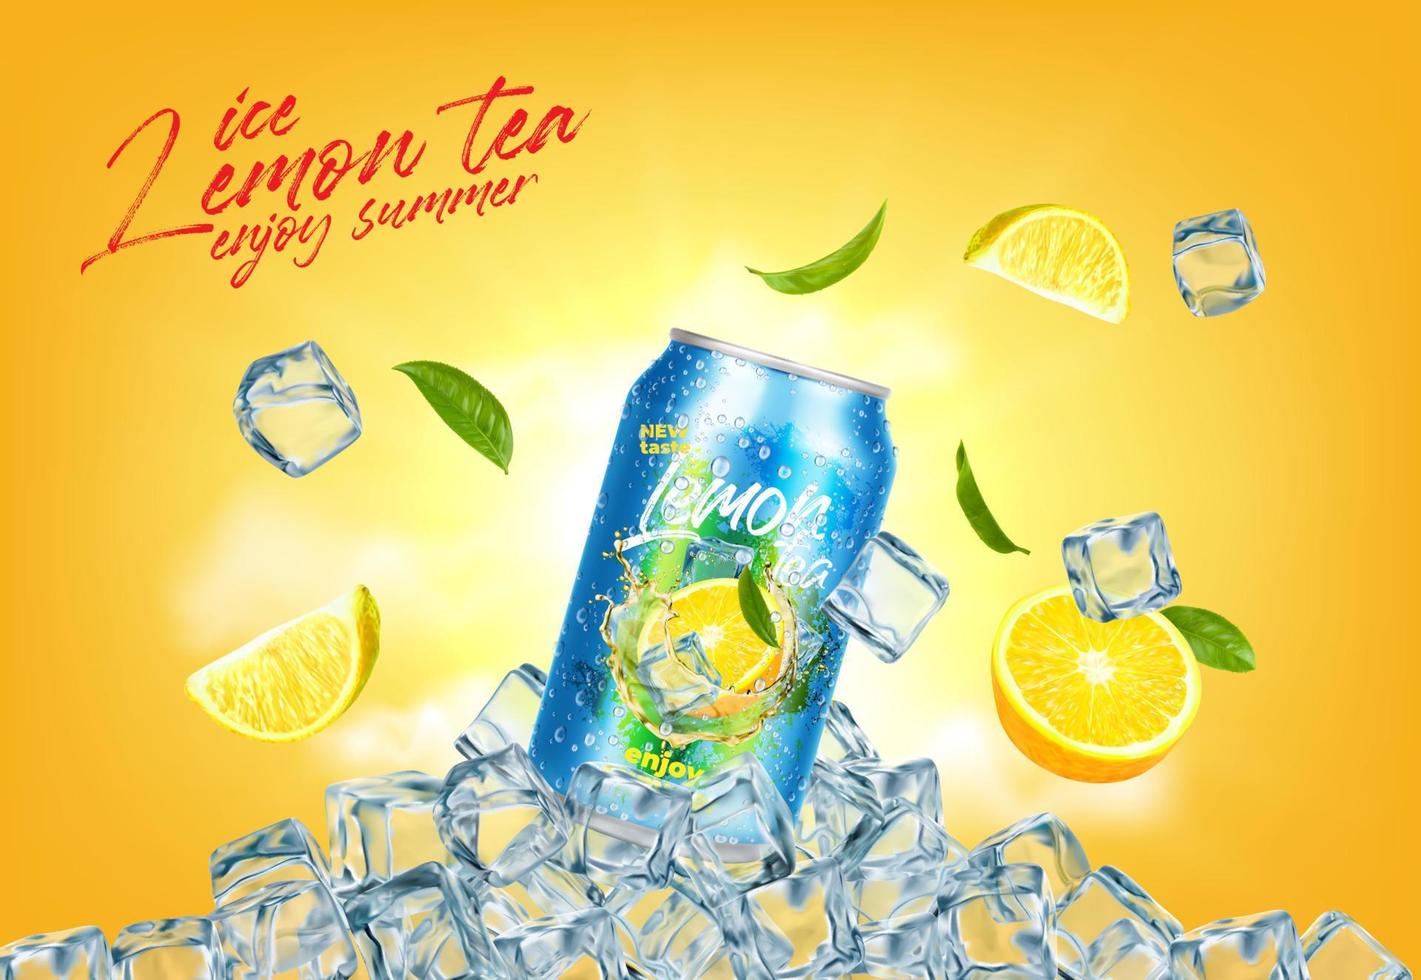 Lemon drink can with crystal ice cubes, lemon tea vector